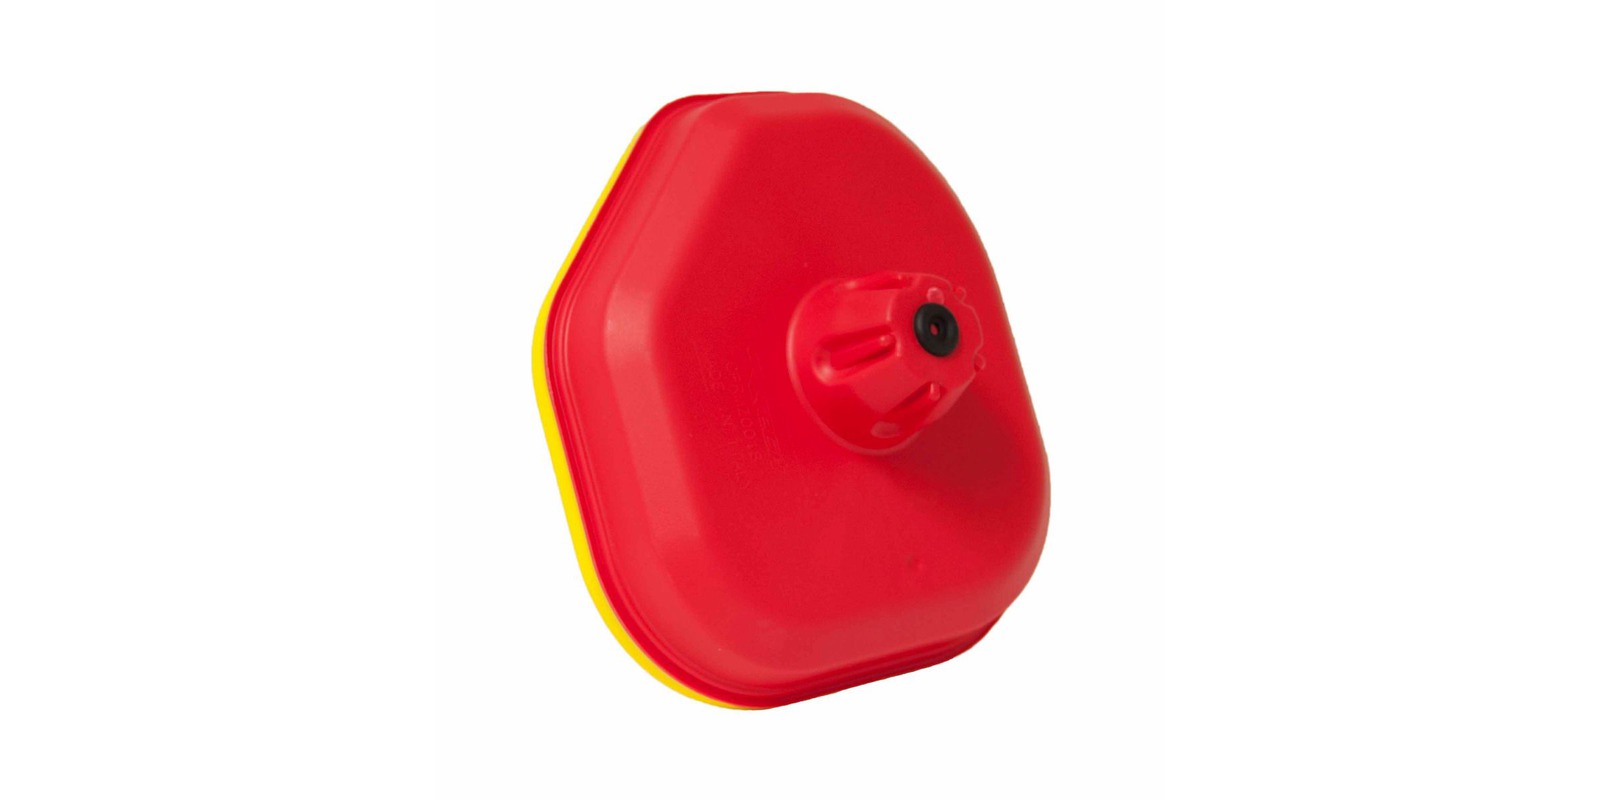 Obrázek produktu vrchní kryt vzduchového filtru SUZUKI, RTECH (červeno-žlutý)